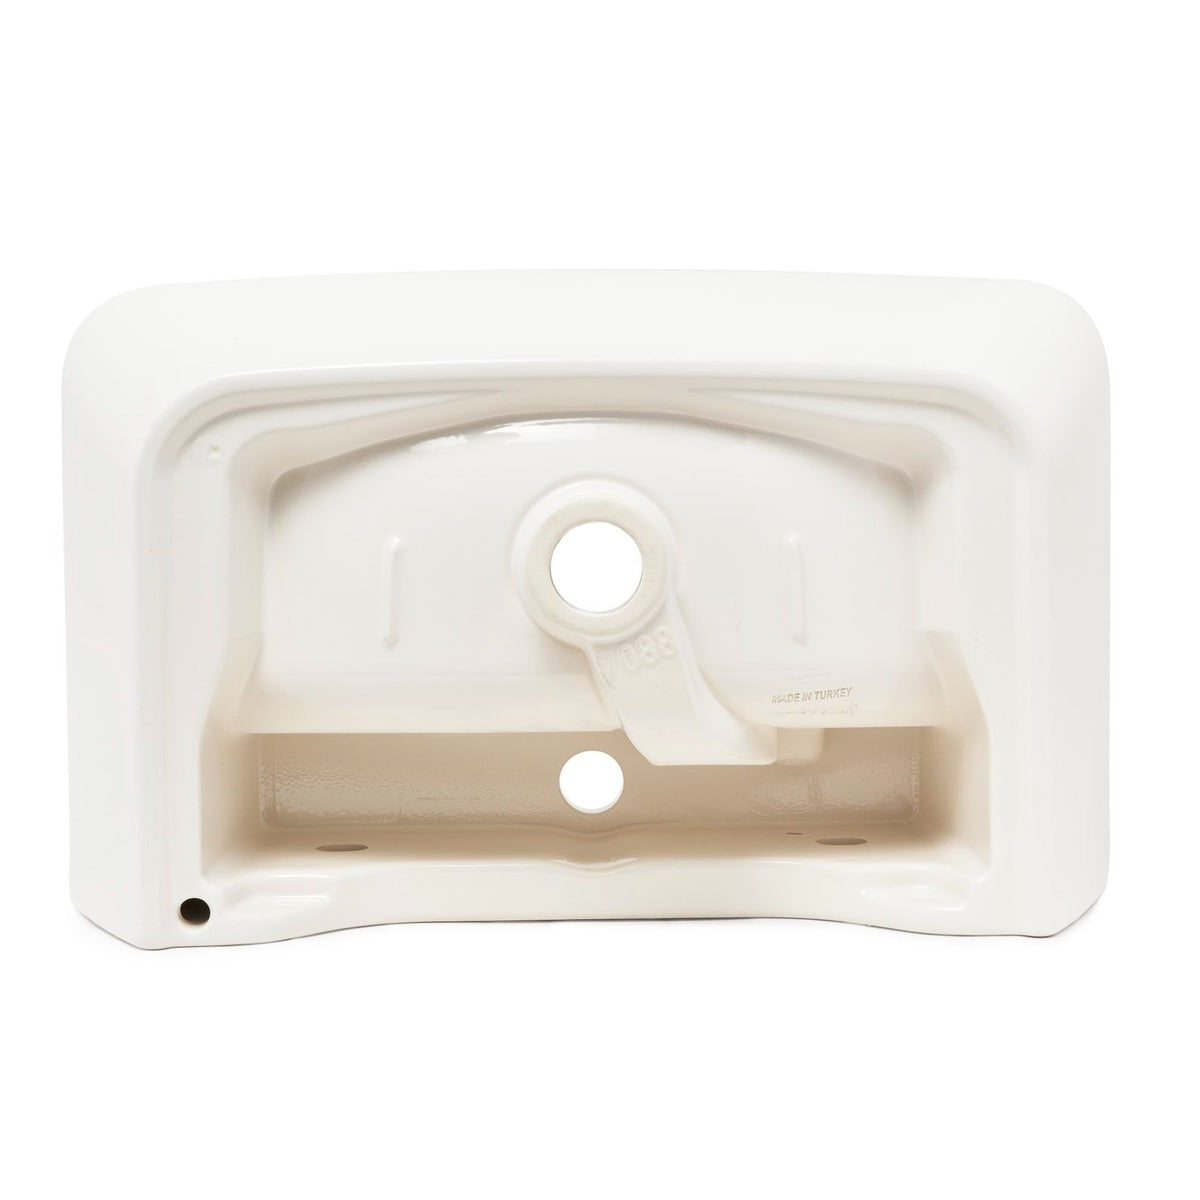 Umivalniki 7088-003-0001 Vitra Integra 60 x 36 cm keramični umivalnik z odprtino za armaturo | KOPALNICA-ONLINE.SI